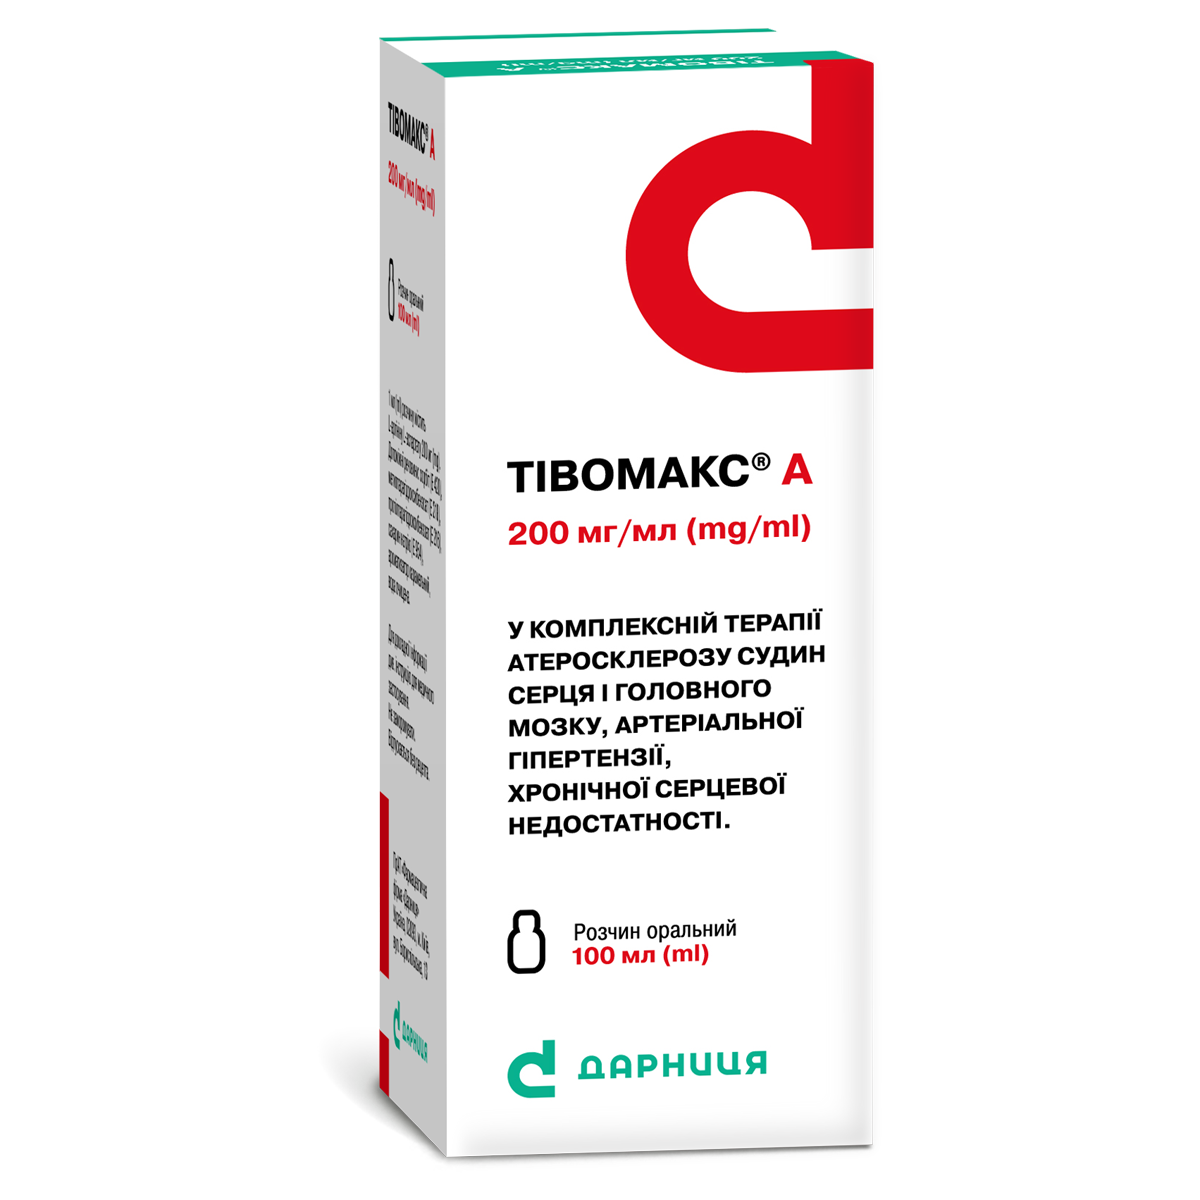 Tivomax A «Darnytsia» pharmaceutical company